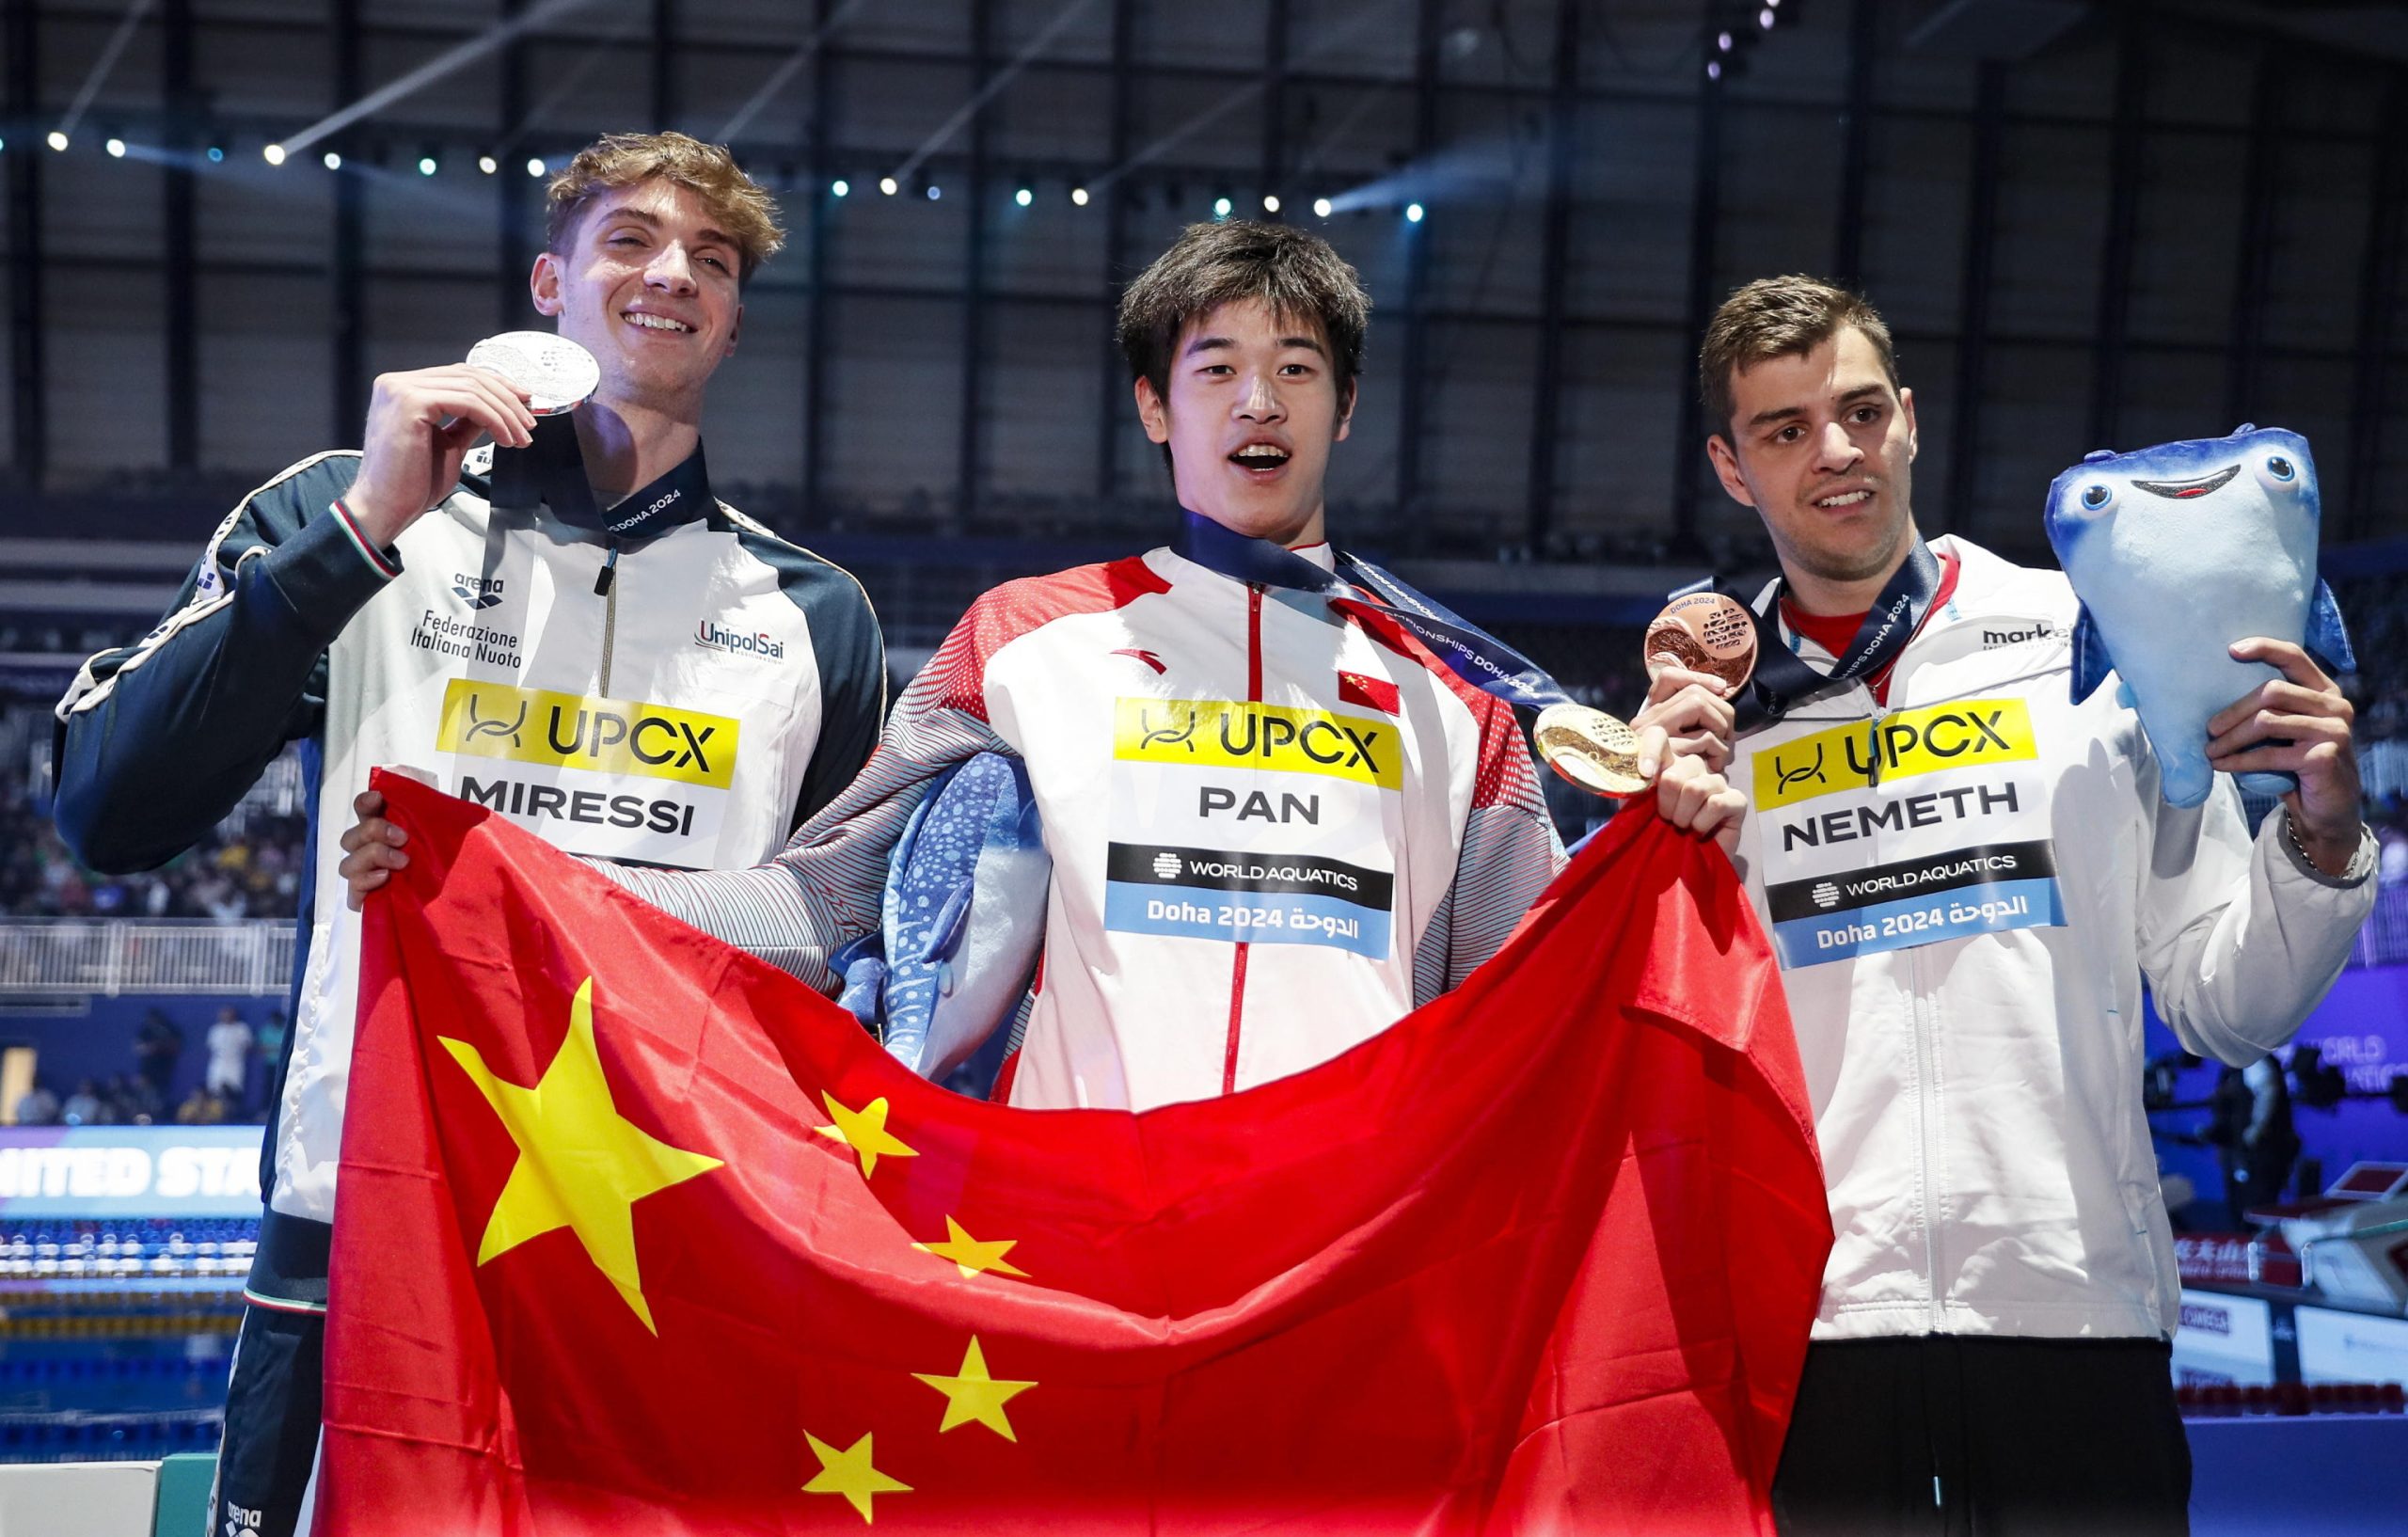 Il vincitore della medaglia d’argento Miressi nella categoria dei 100 stile libero a Doha insieme all’atleta cinese Zhanle Pan e all’ungherese Nandor Nemeth